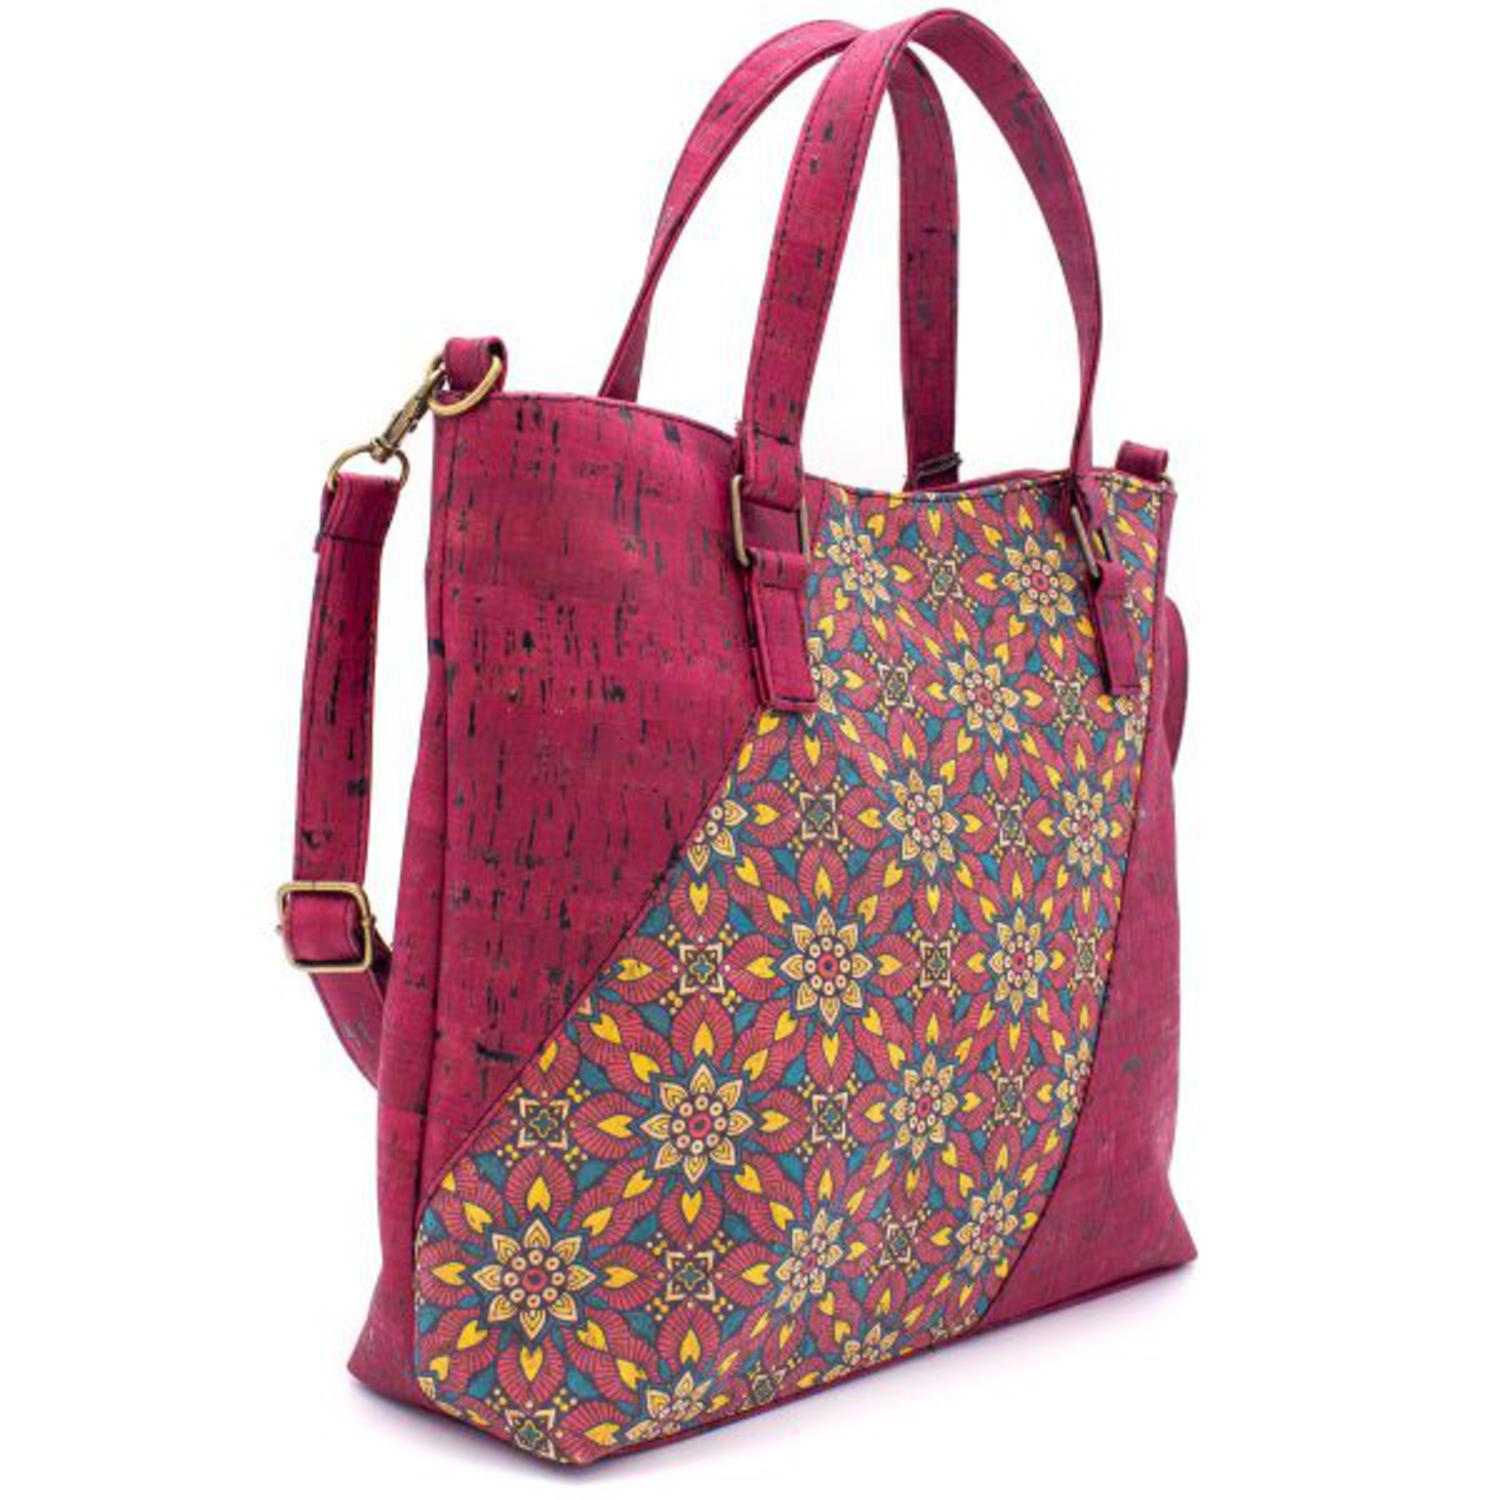 Ženska torbica z elegantnimi vzorci